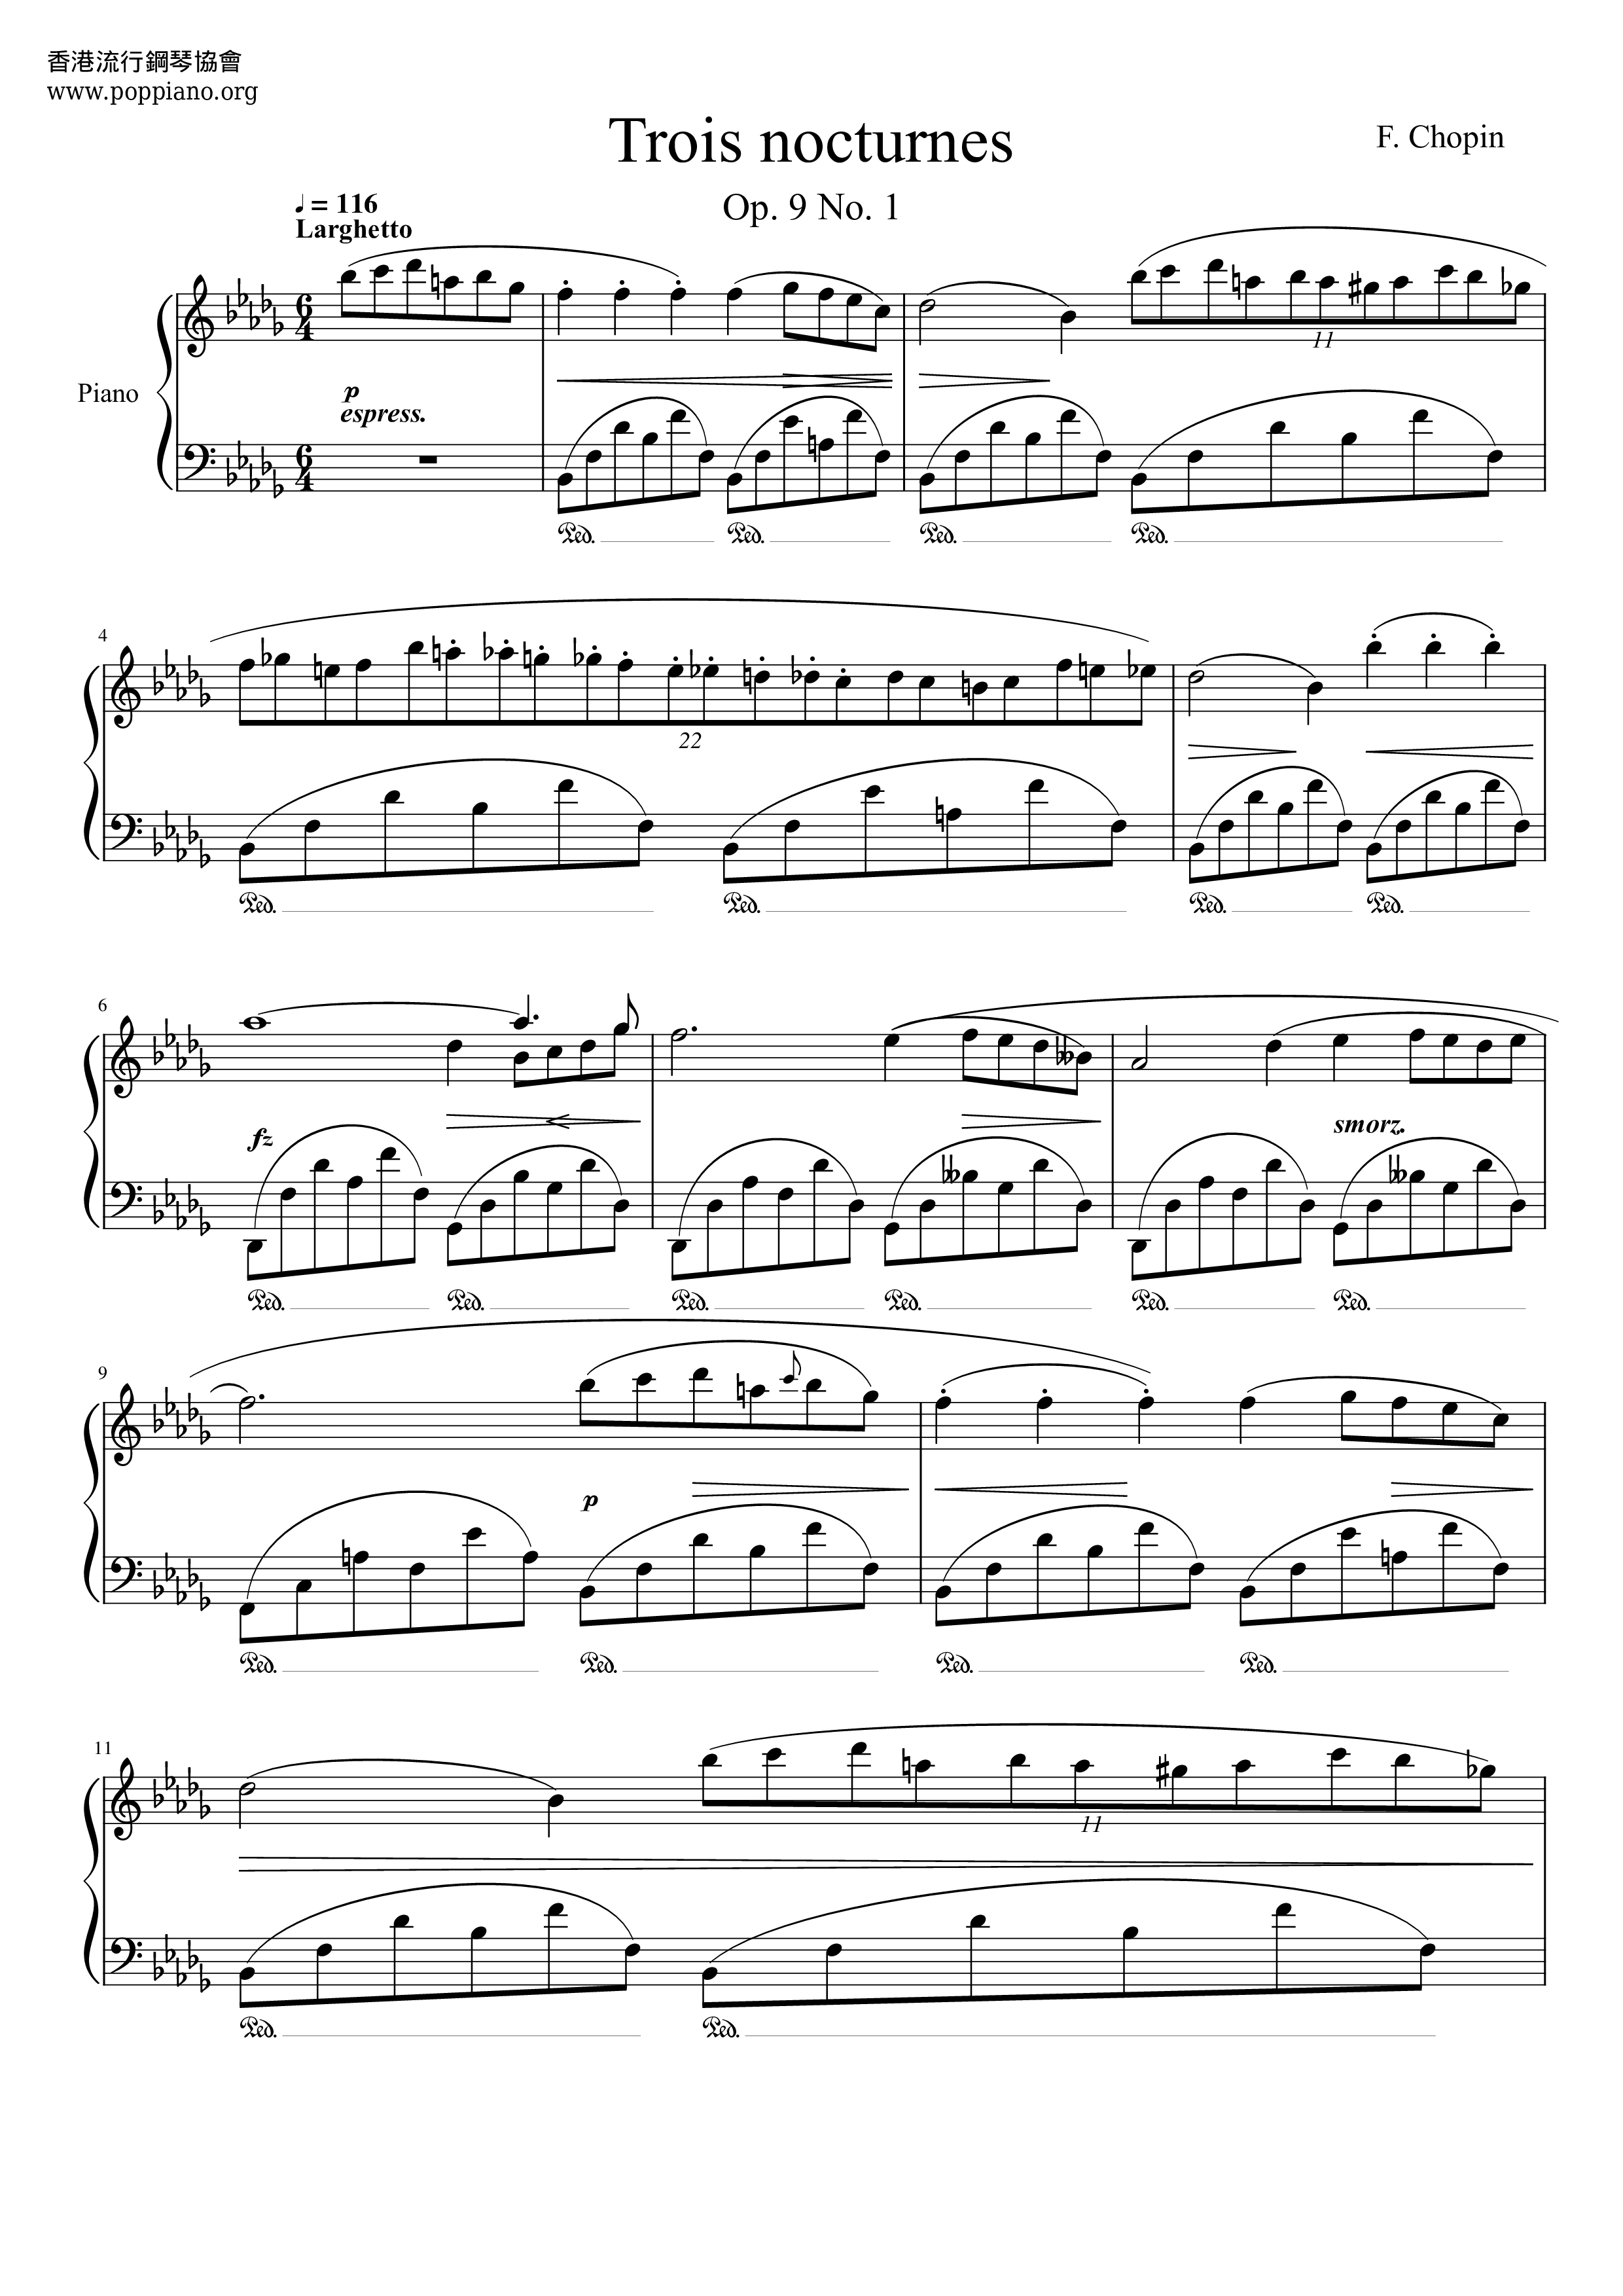 Nocturne Op. 9 No. 1 in B flat minor琴谱